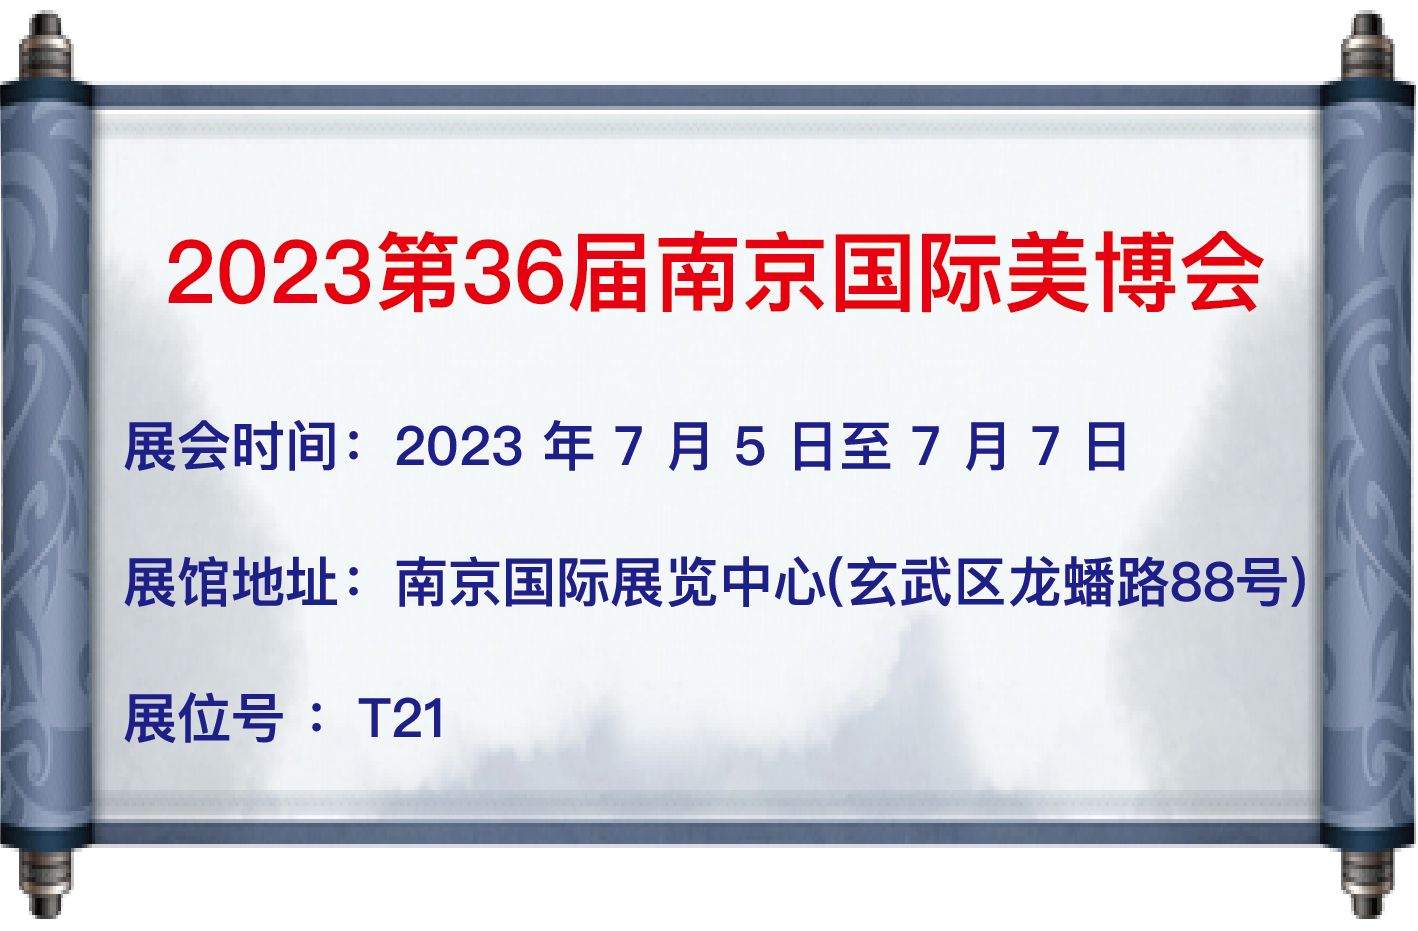 我司于7月5日至7日參加【2023第36屆南京國際美博會】 地址：南京國際展覽中心（玄武區龍蟠路88號） 展位號：T21 歡迎大家蒞臨參觀！